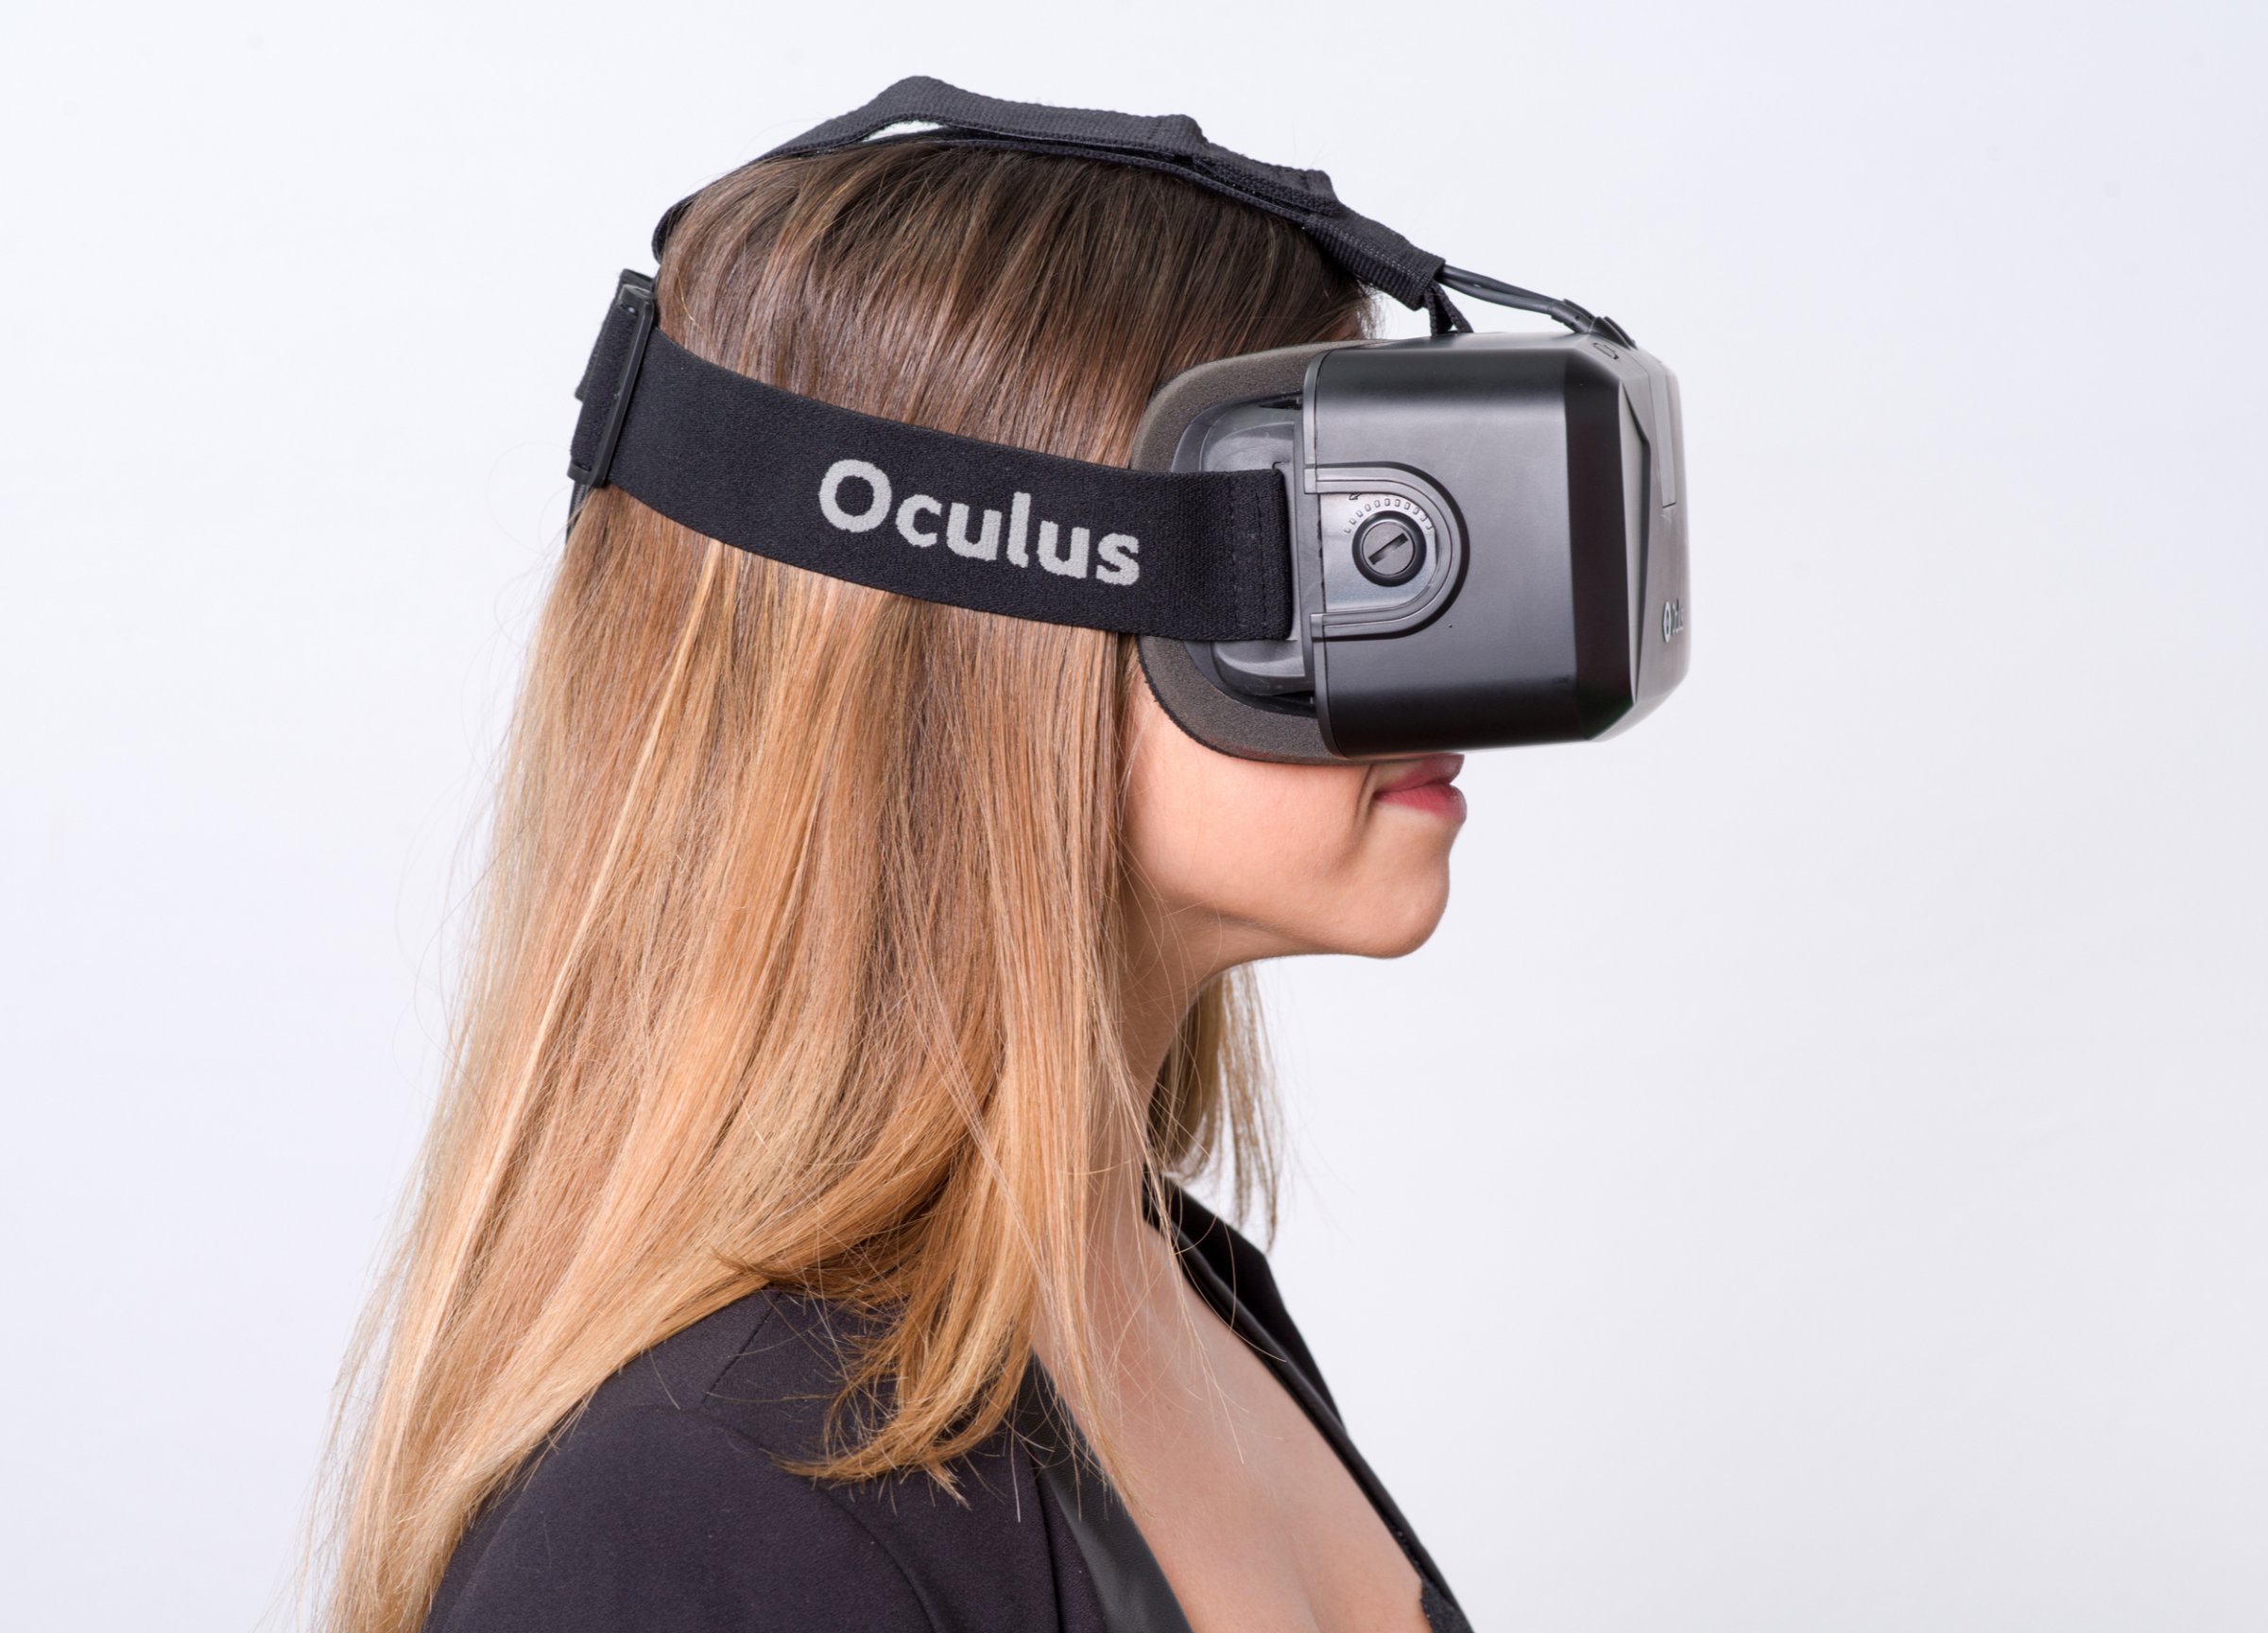 factory reset oculus rift